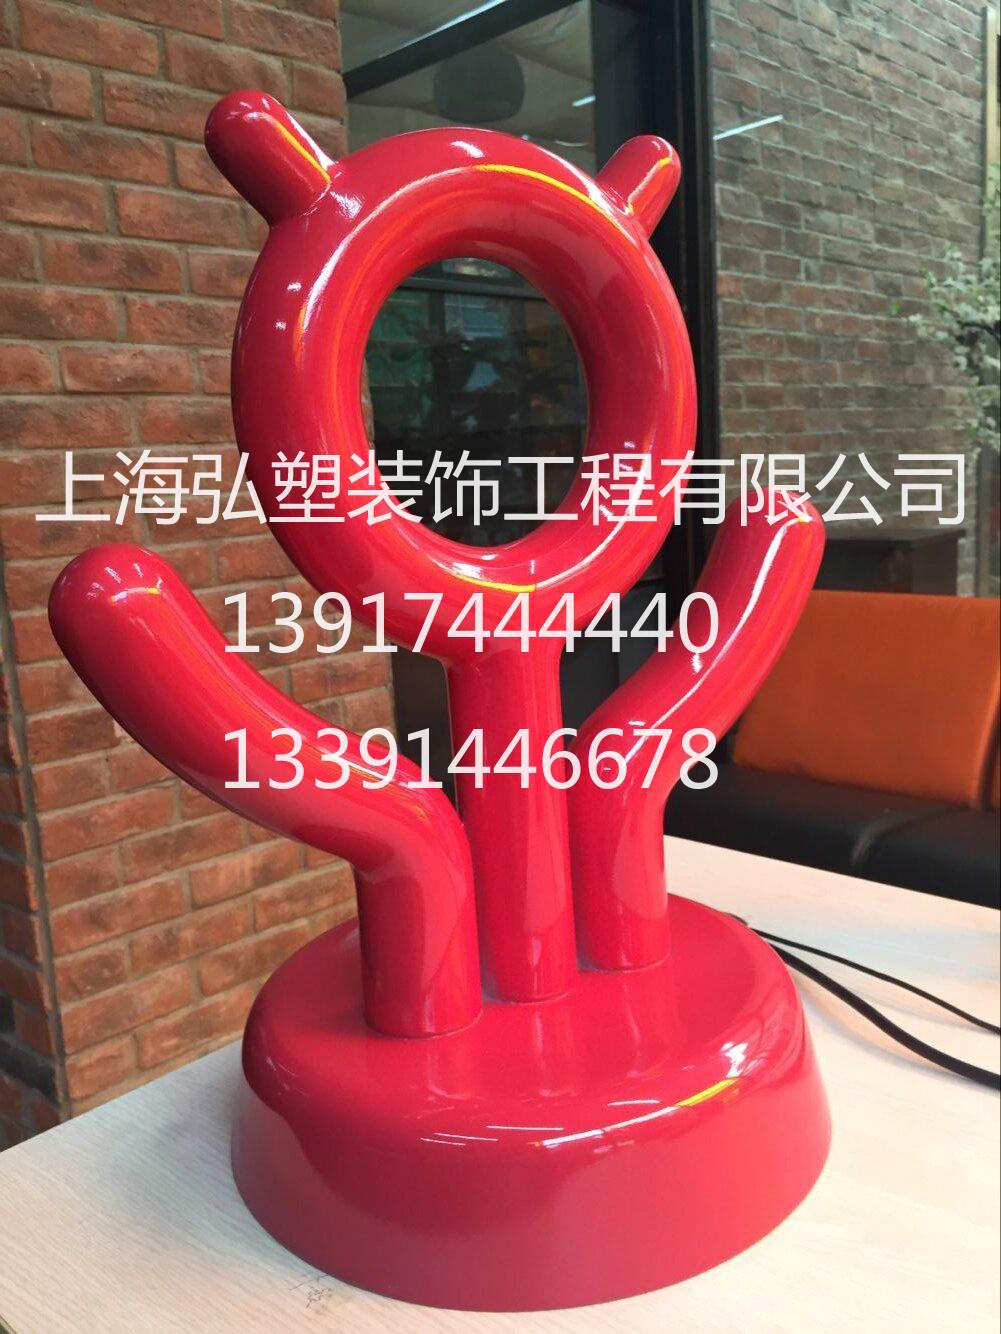 大型旋转玻璃钢雕塑，酷丸玻璃钢雕塑，上海雕塑厂13917444440